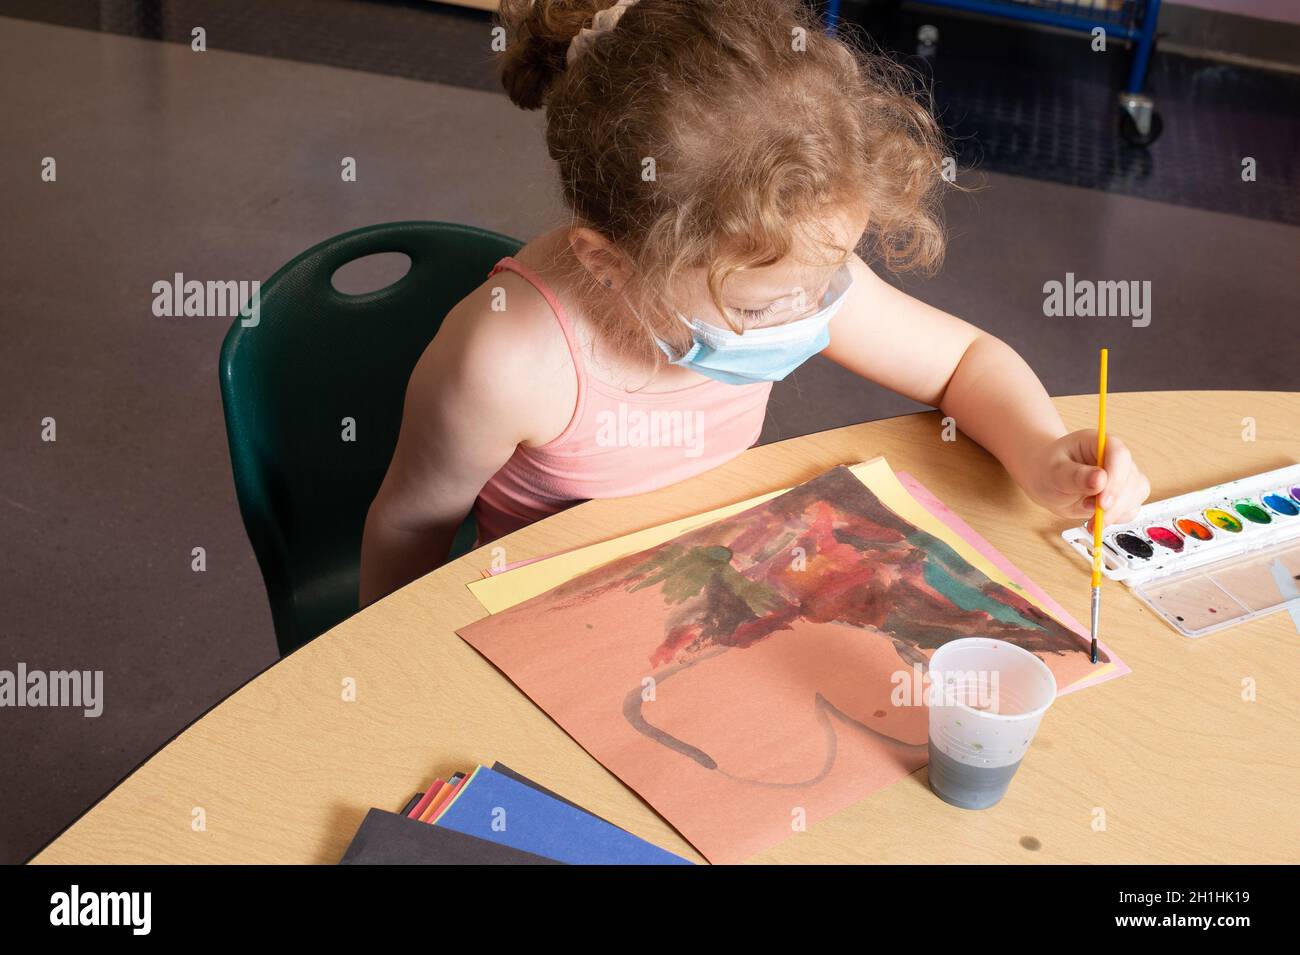 Éducation préscolaire jeune fille de 4-5 ans assise à la table de peinture avec des couleurs d'eau, en utilisant la main gauche, portant un masque facial Banque D'Images